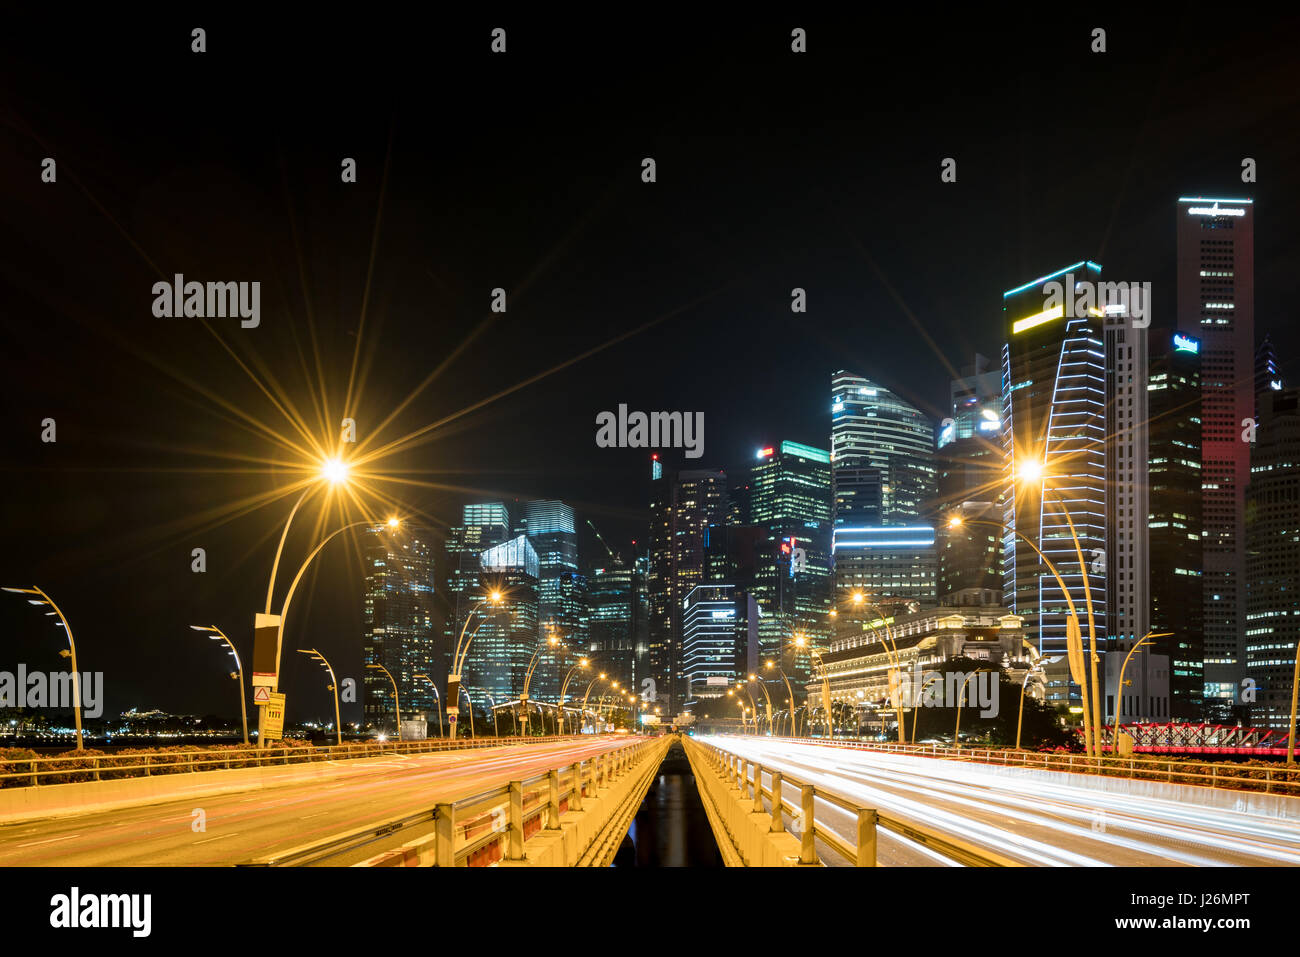 La ville de Singapour Marina Bay, des finances et du Commerce de la ville moderne de la zone de fond de nuit Banque D'Images